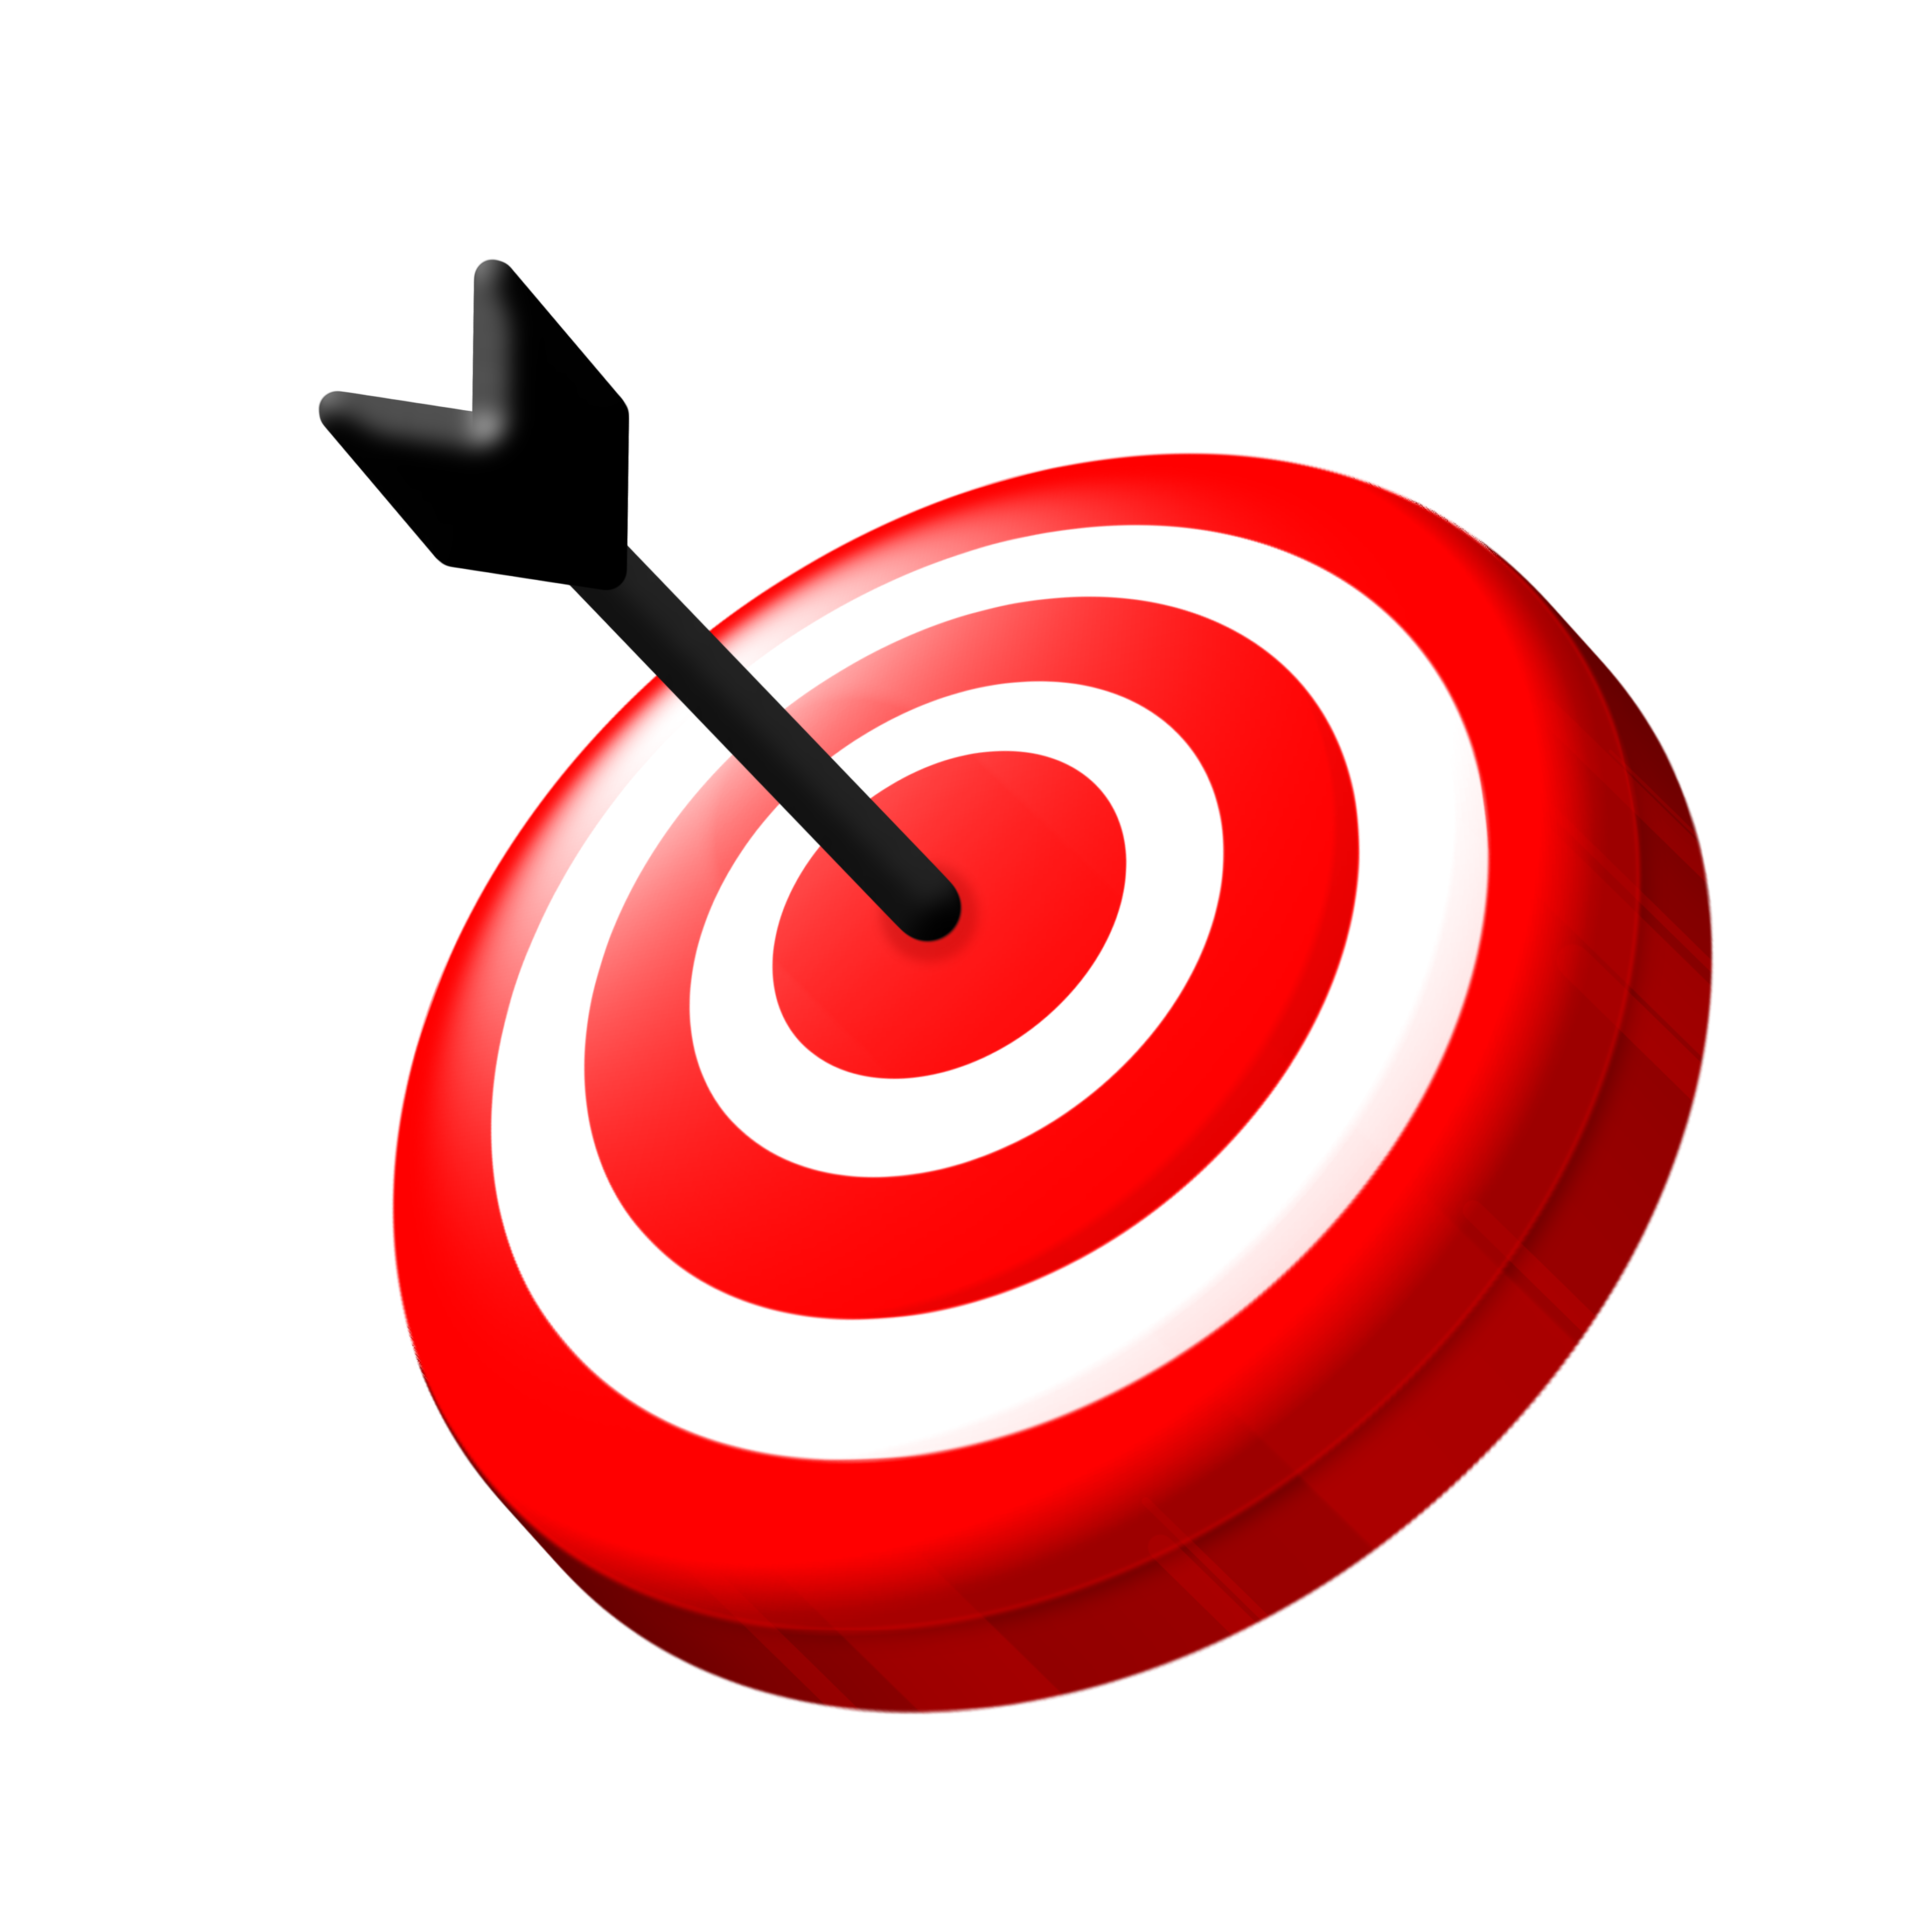 Target Game Asset là một phần quan trọng để hoàn thiện trò chơi của bạn. Hãy khám phá những Target Game Asset chất lượng và đa dạng để tạo ra một game hoàn hảo với mục tiêu rõ ràng và hấp dẫn cho người chơi.